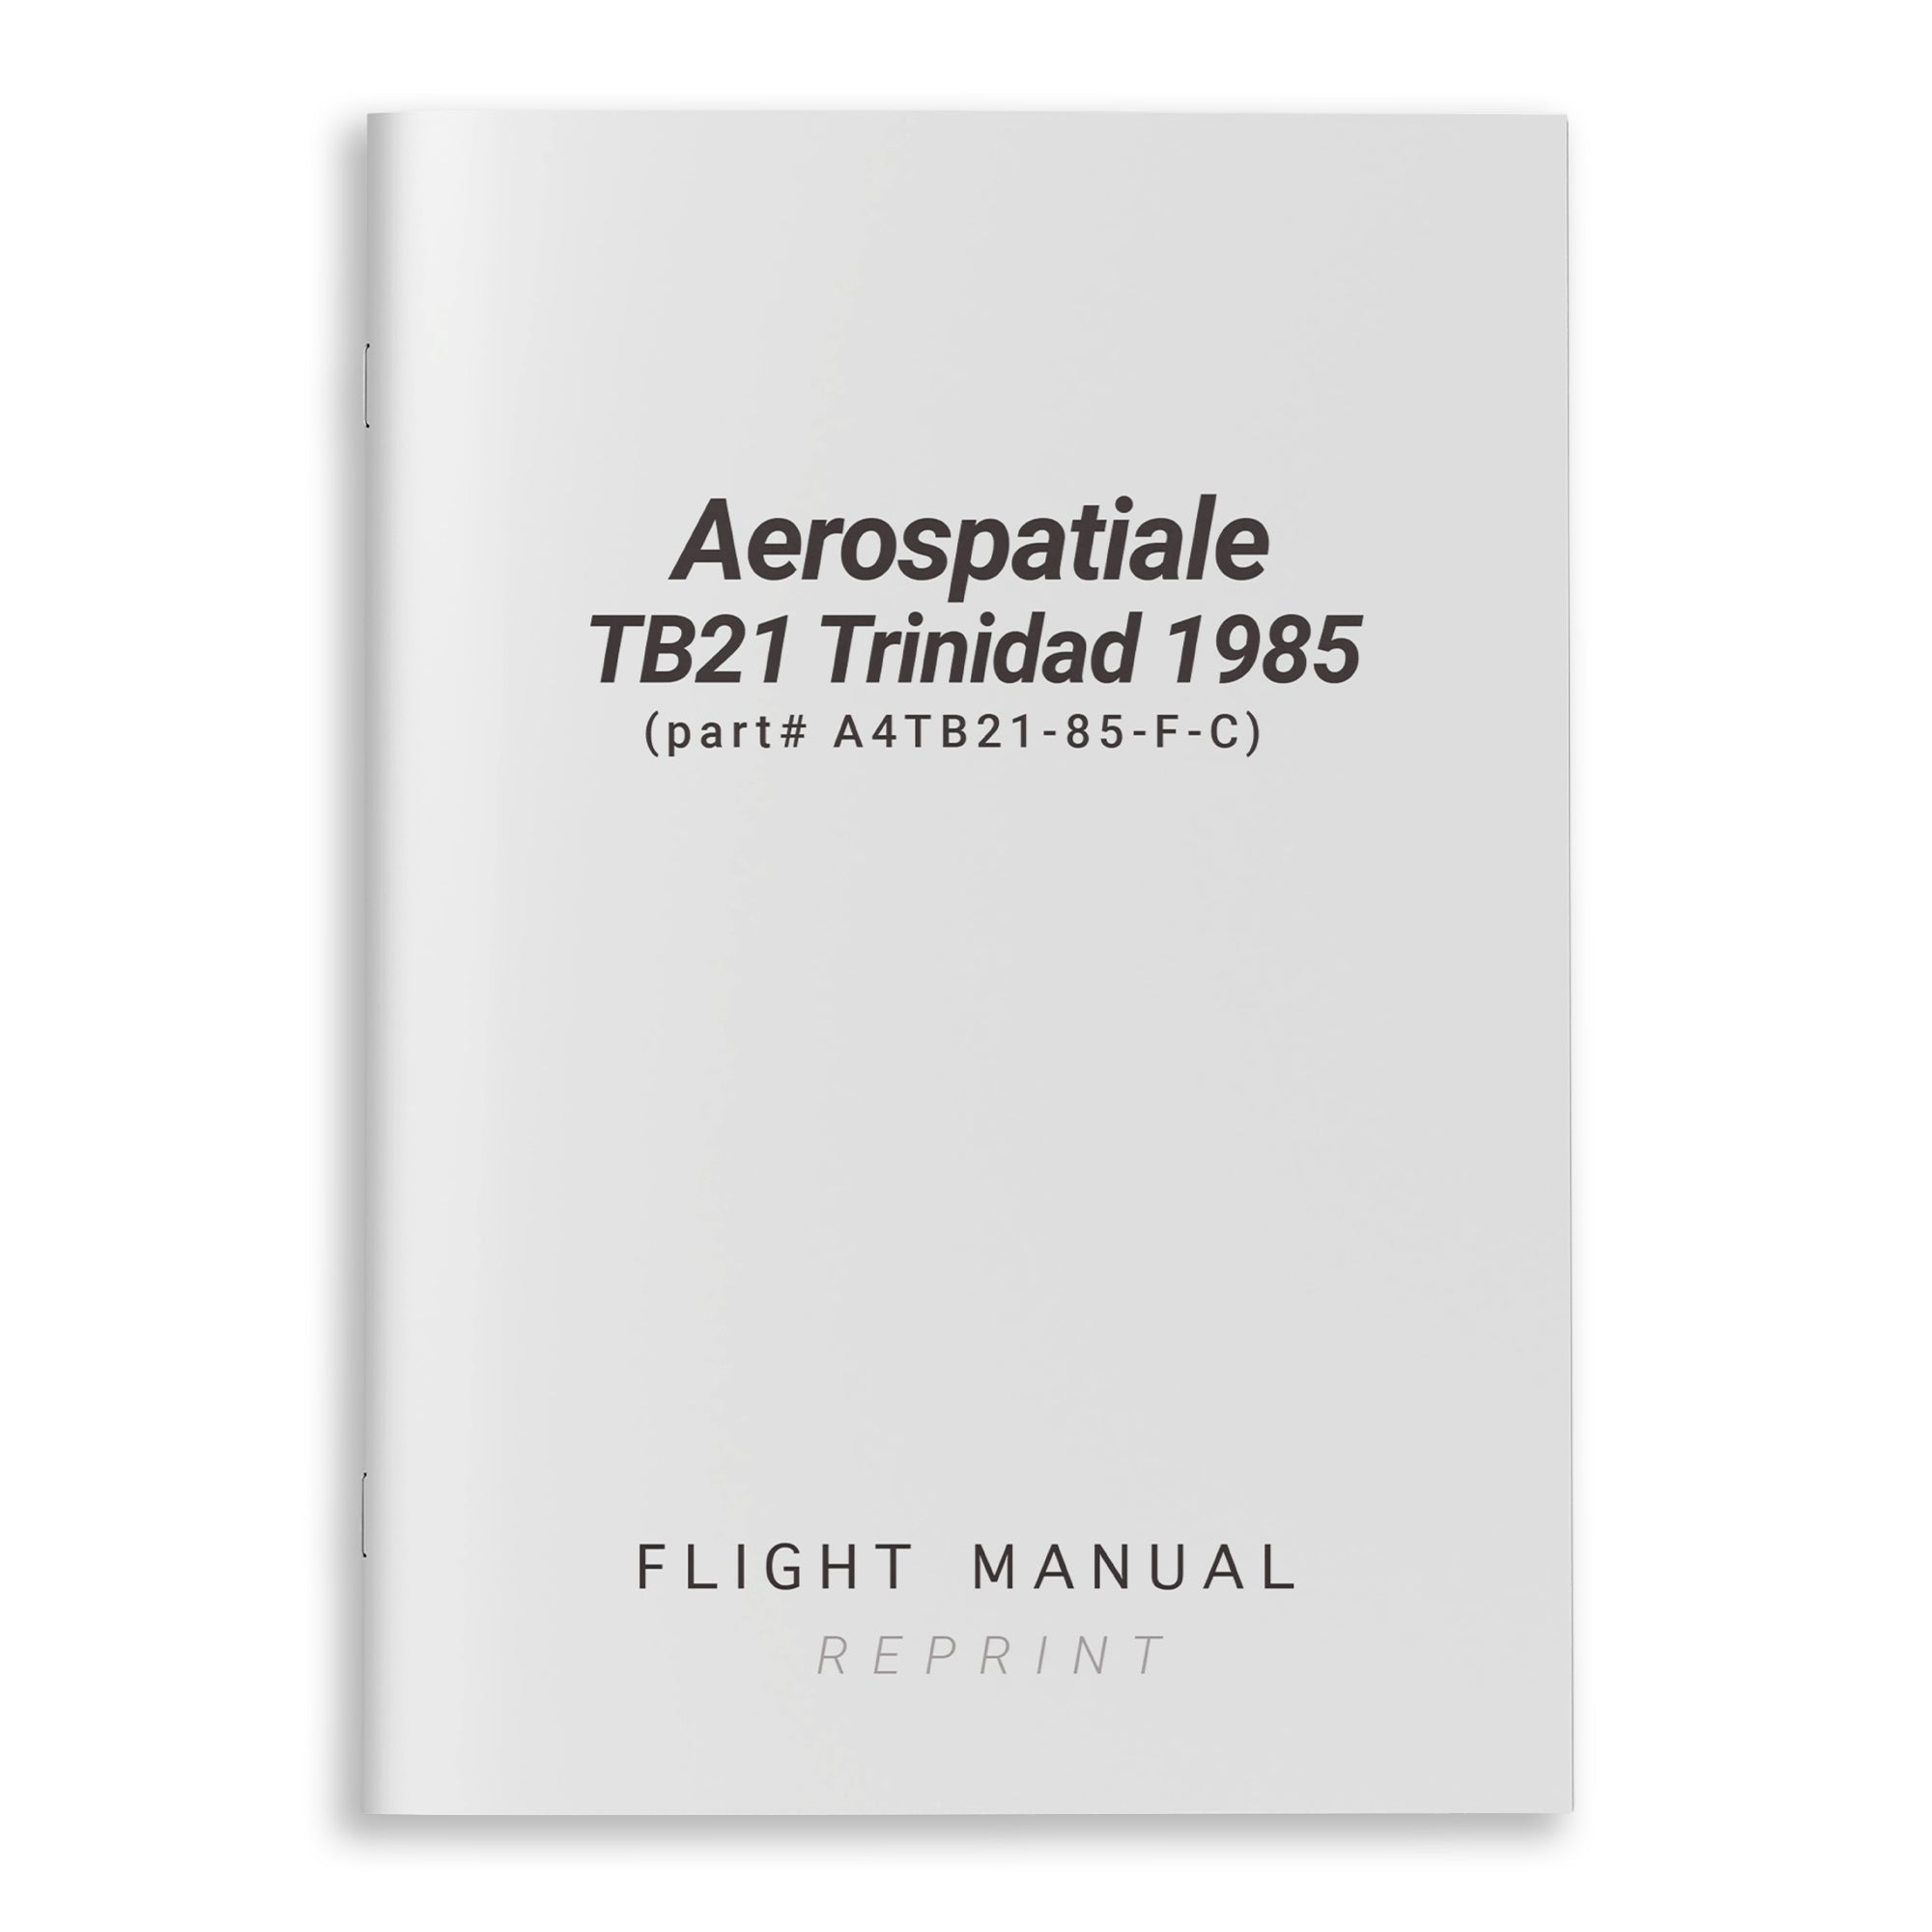 Aerospatiale TB21 Trinidad 1985 Flight Manual (part# A4TB21-85-F-C) - PilotMall.com